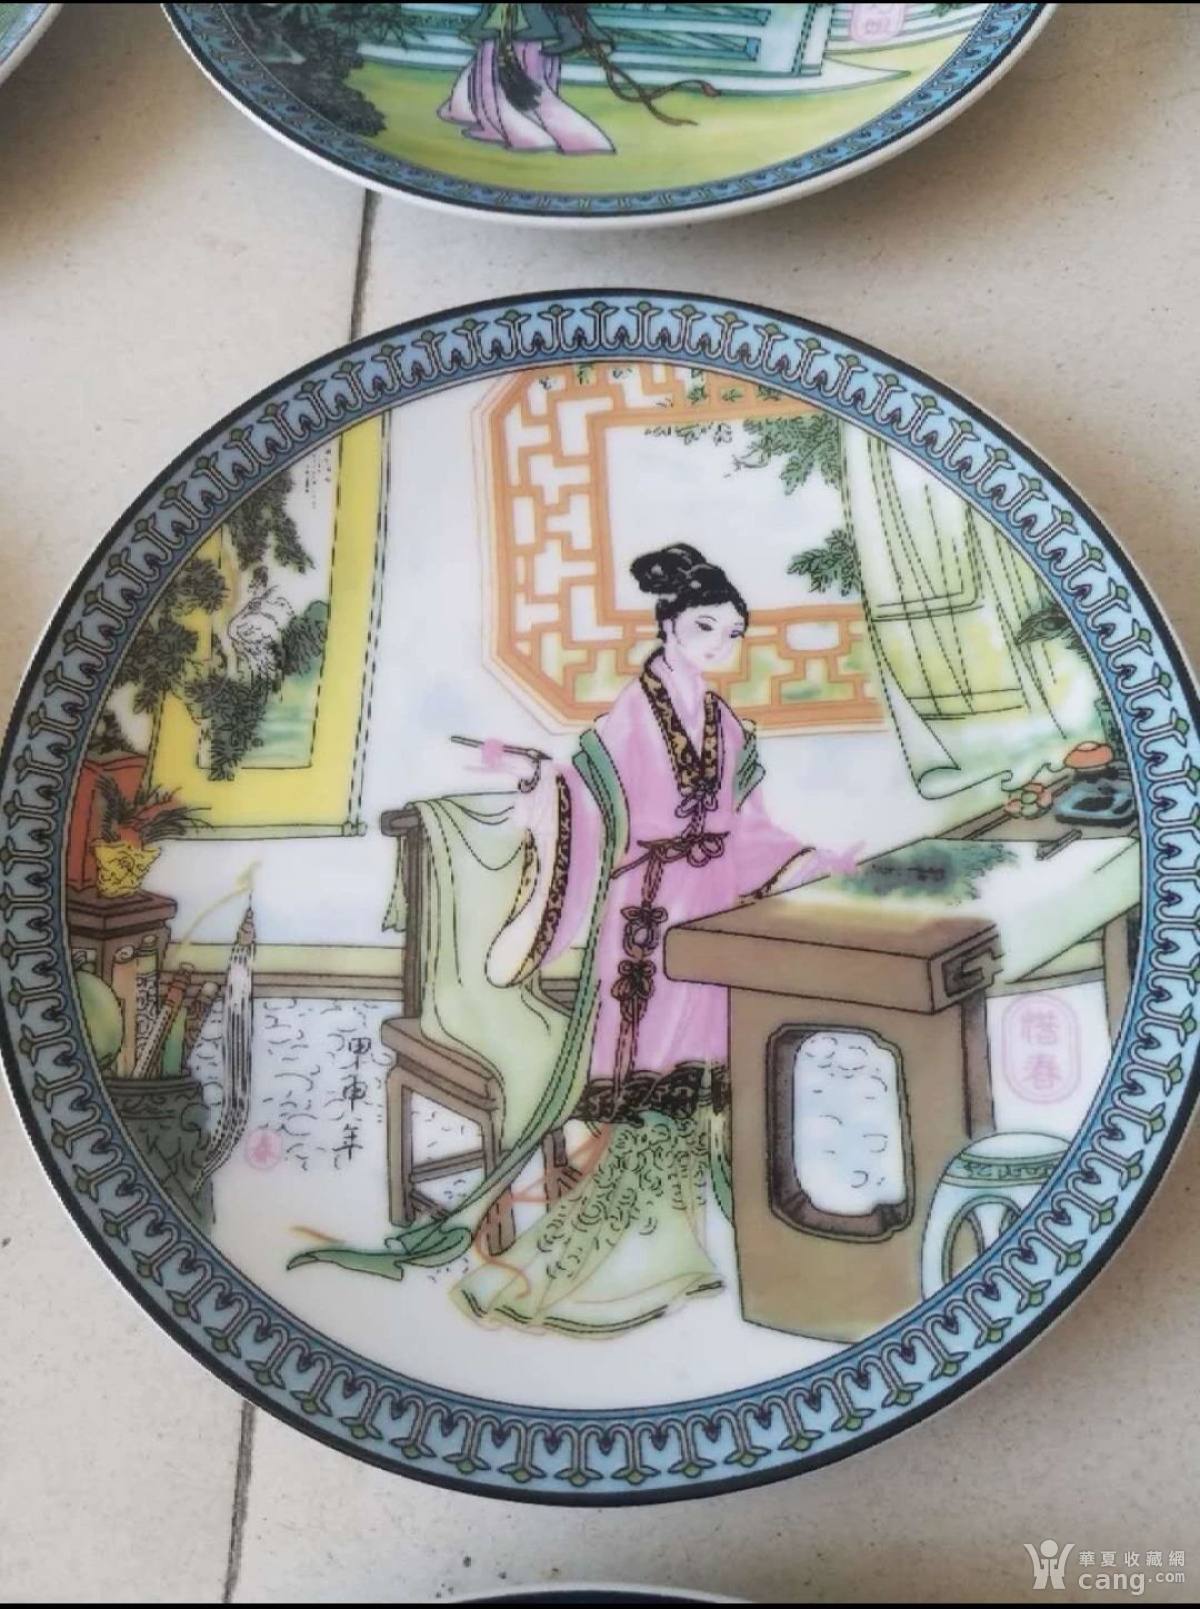 八十年代赵惠民老师制作金陵十二钗出口外销瓷盘- 民国- 瓷器- 华夏收藏网